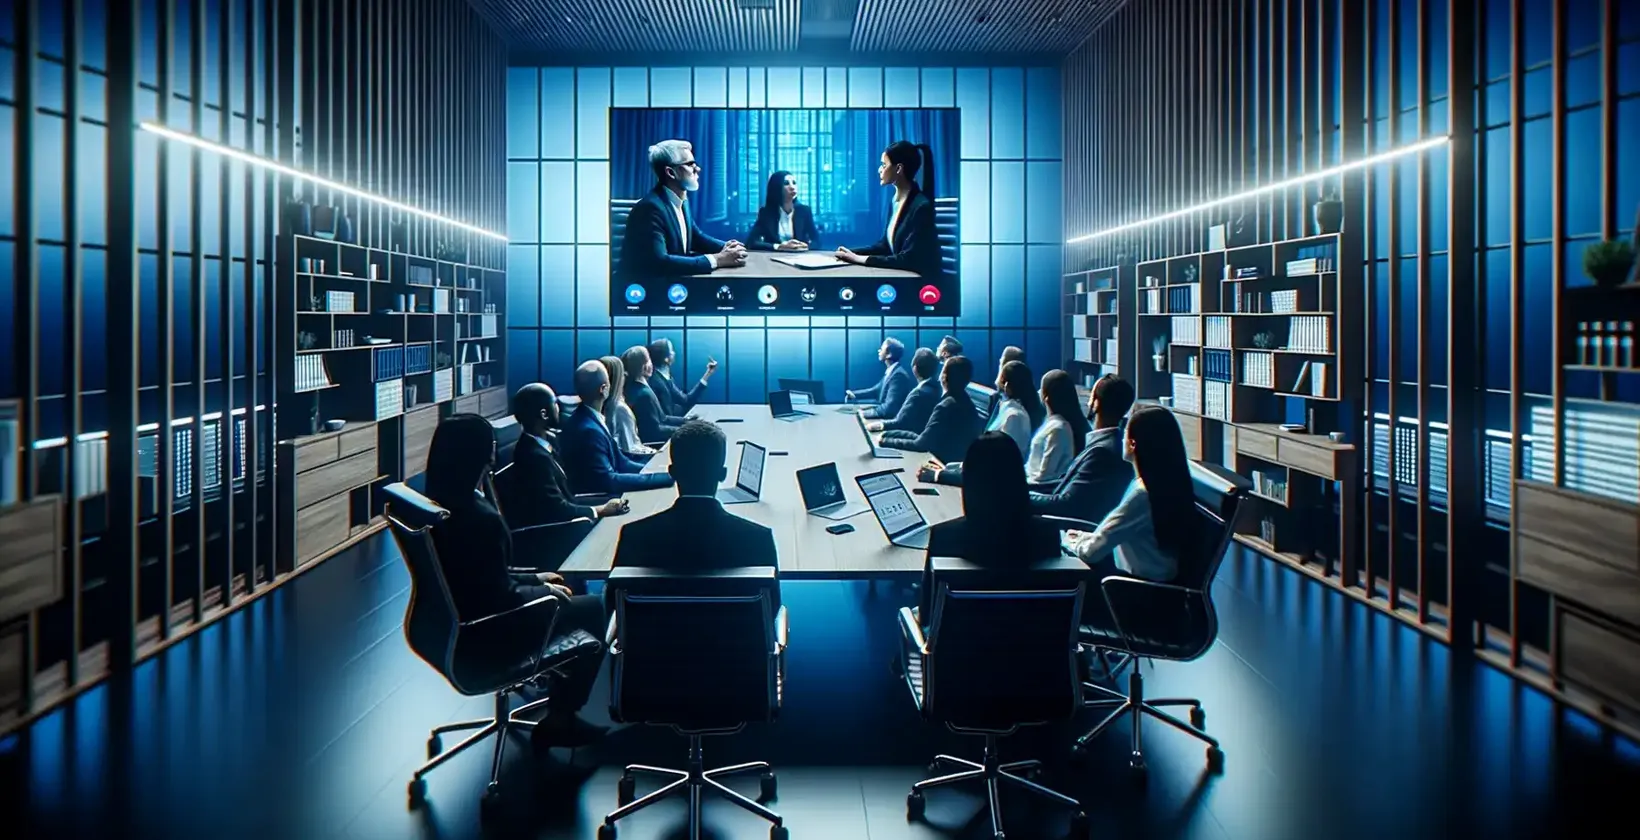 Bijeenkomst transcriptie geobserveerd als professionals in een blauw verlichte kamer kijken naar een driepersoons videogesprek.